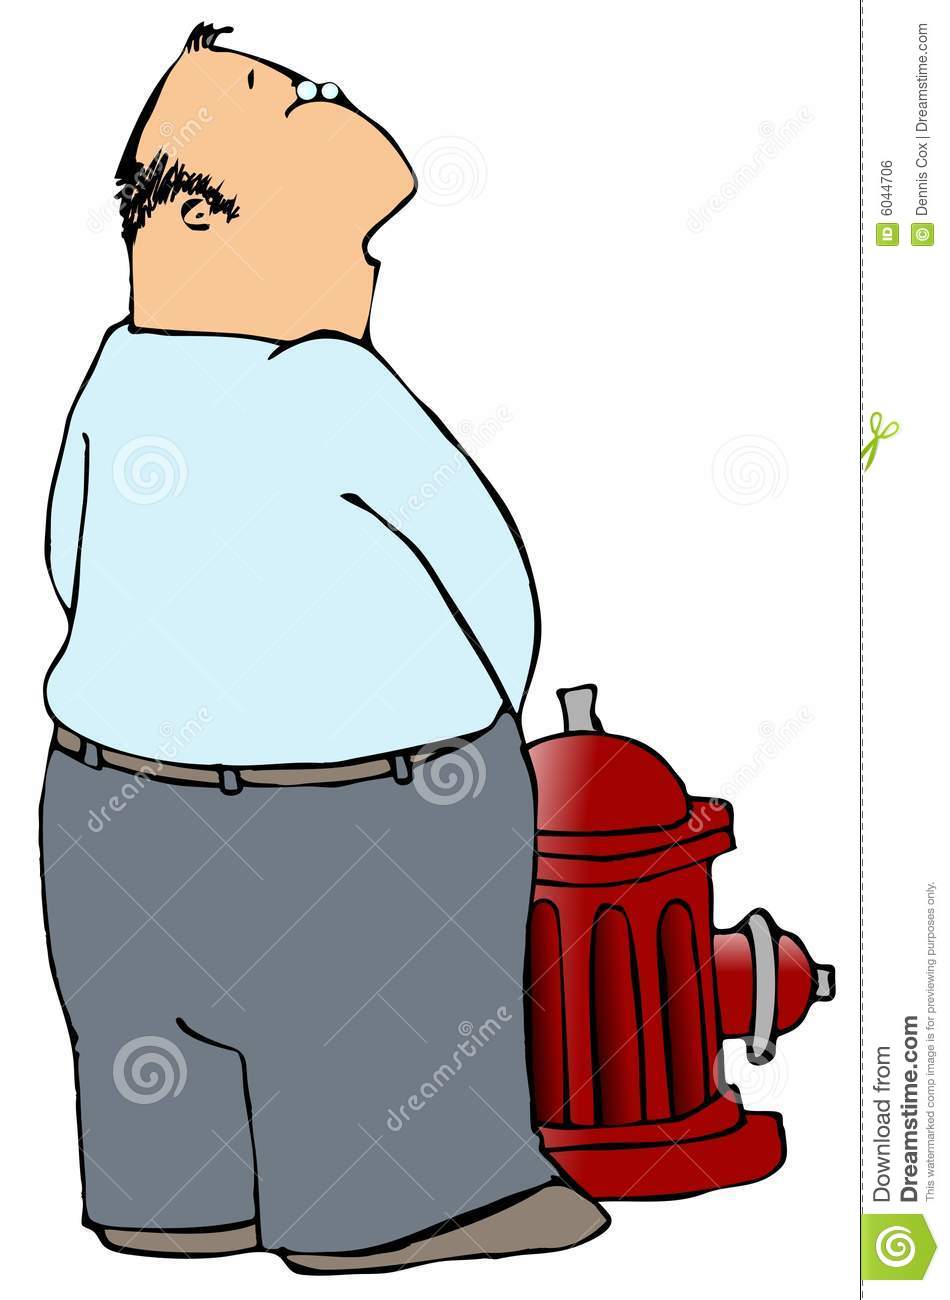 Boy peeing on hydrant